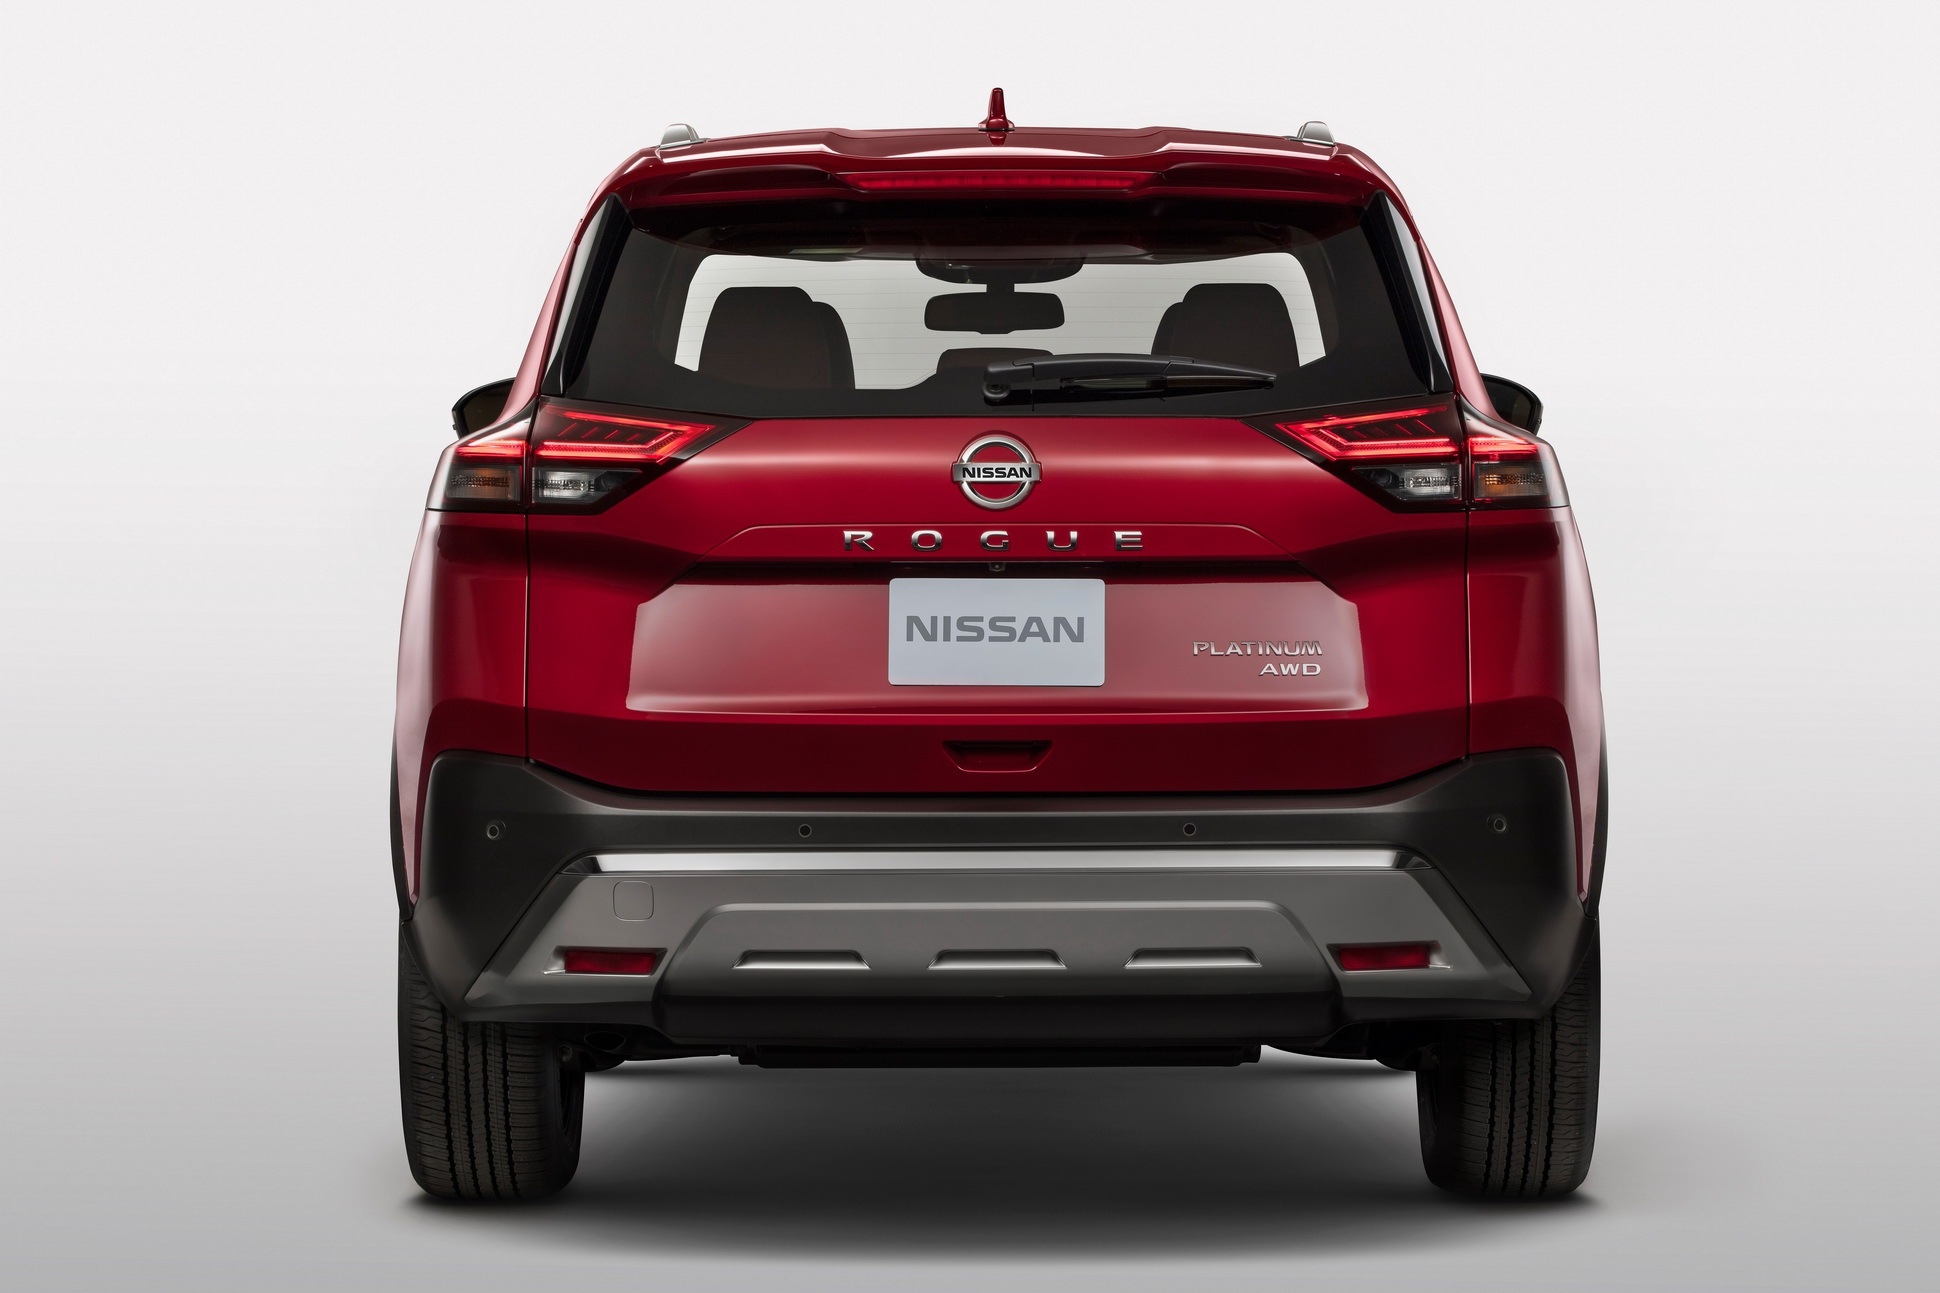 ปรับใหม่ทั้งคัน! Nissan X-Trail 2021 เอสยูวียอดฮิตเปิดตัวที่สหรัฐฯ เริ่มต้นราว 8 แสน